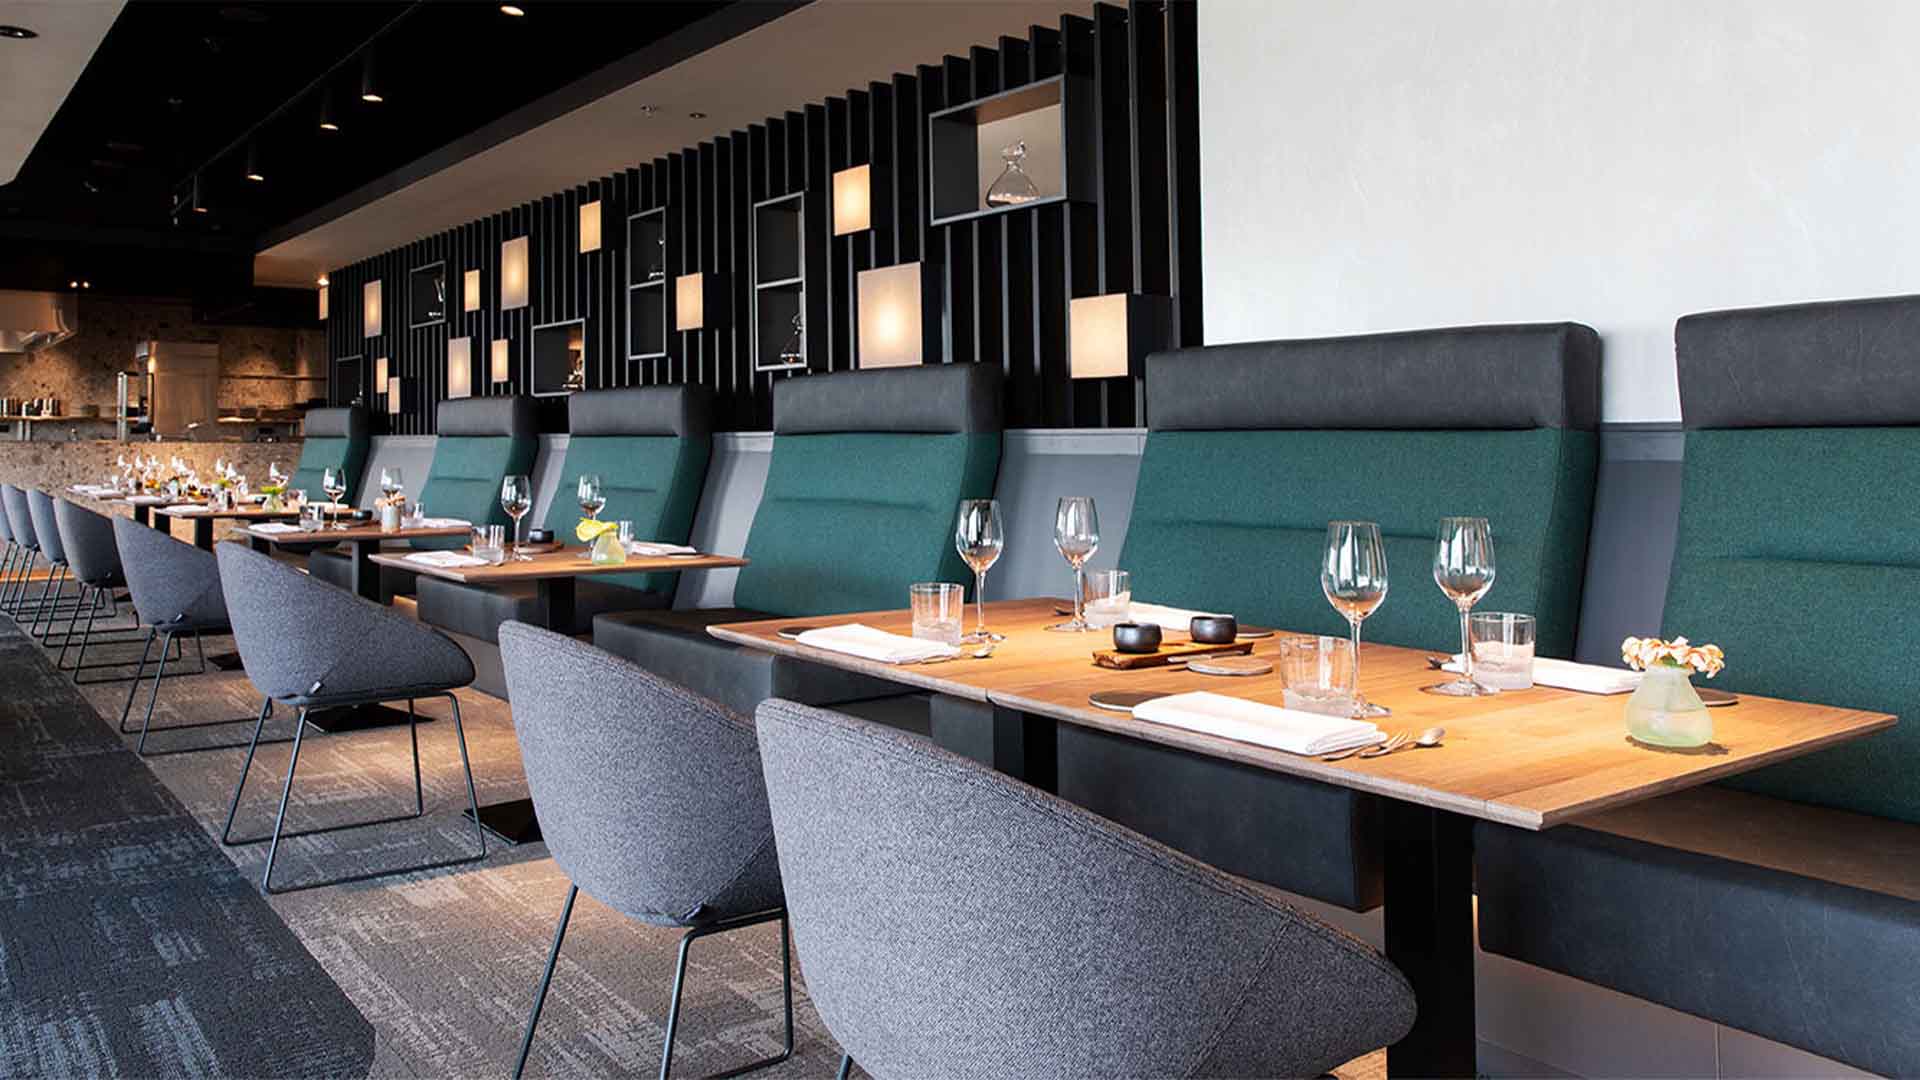 Maaskant meubel- en interieurbouw - projecten - the millen - Rotterdam - restaurant - interieur